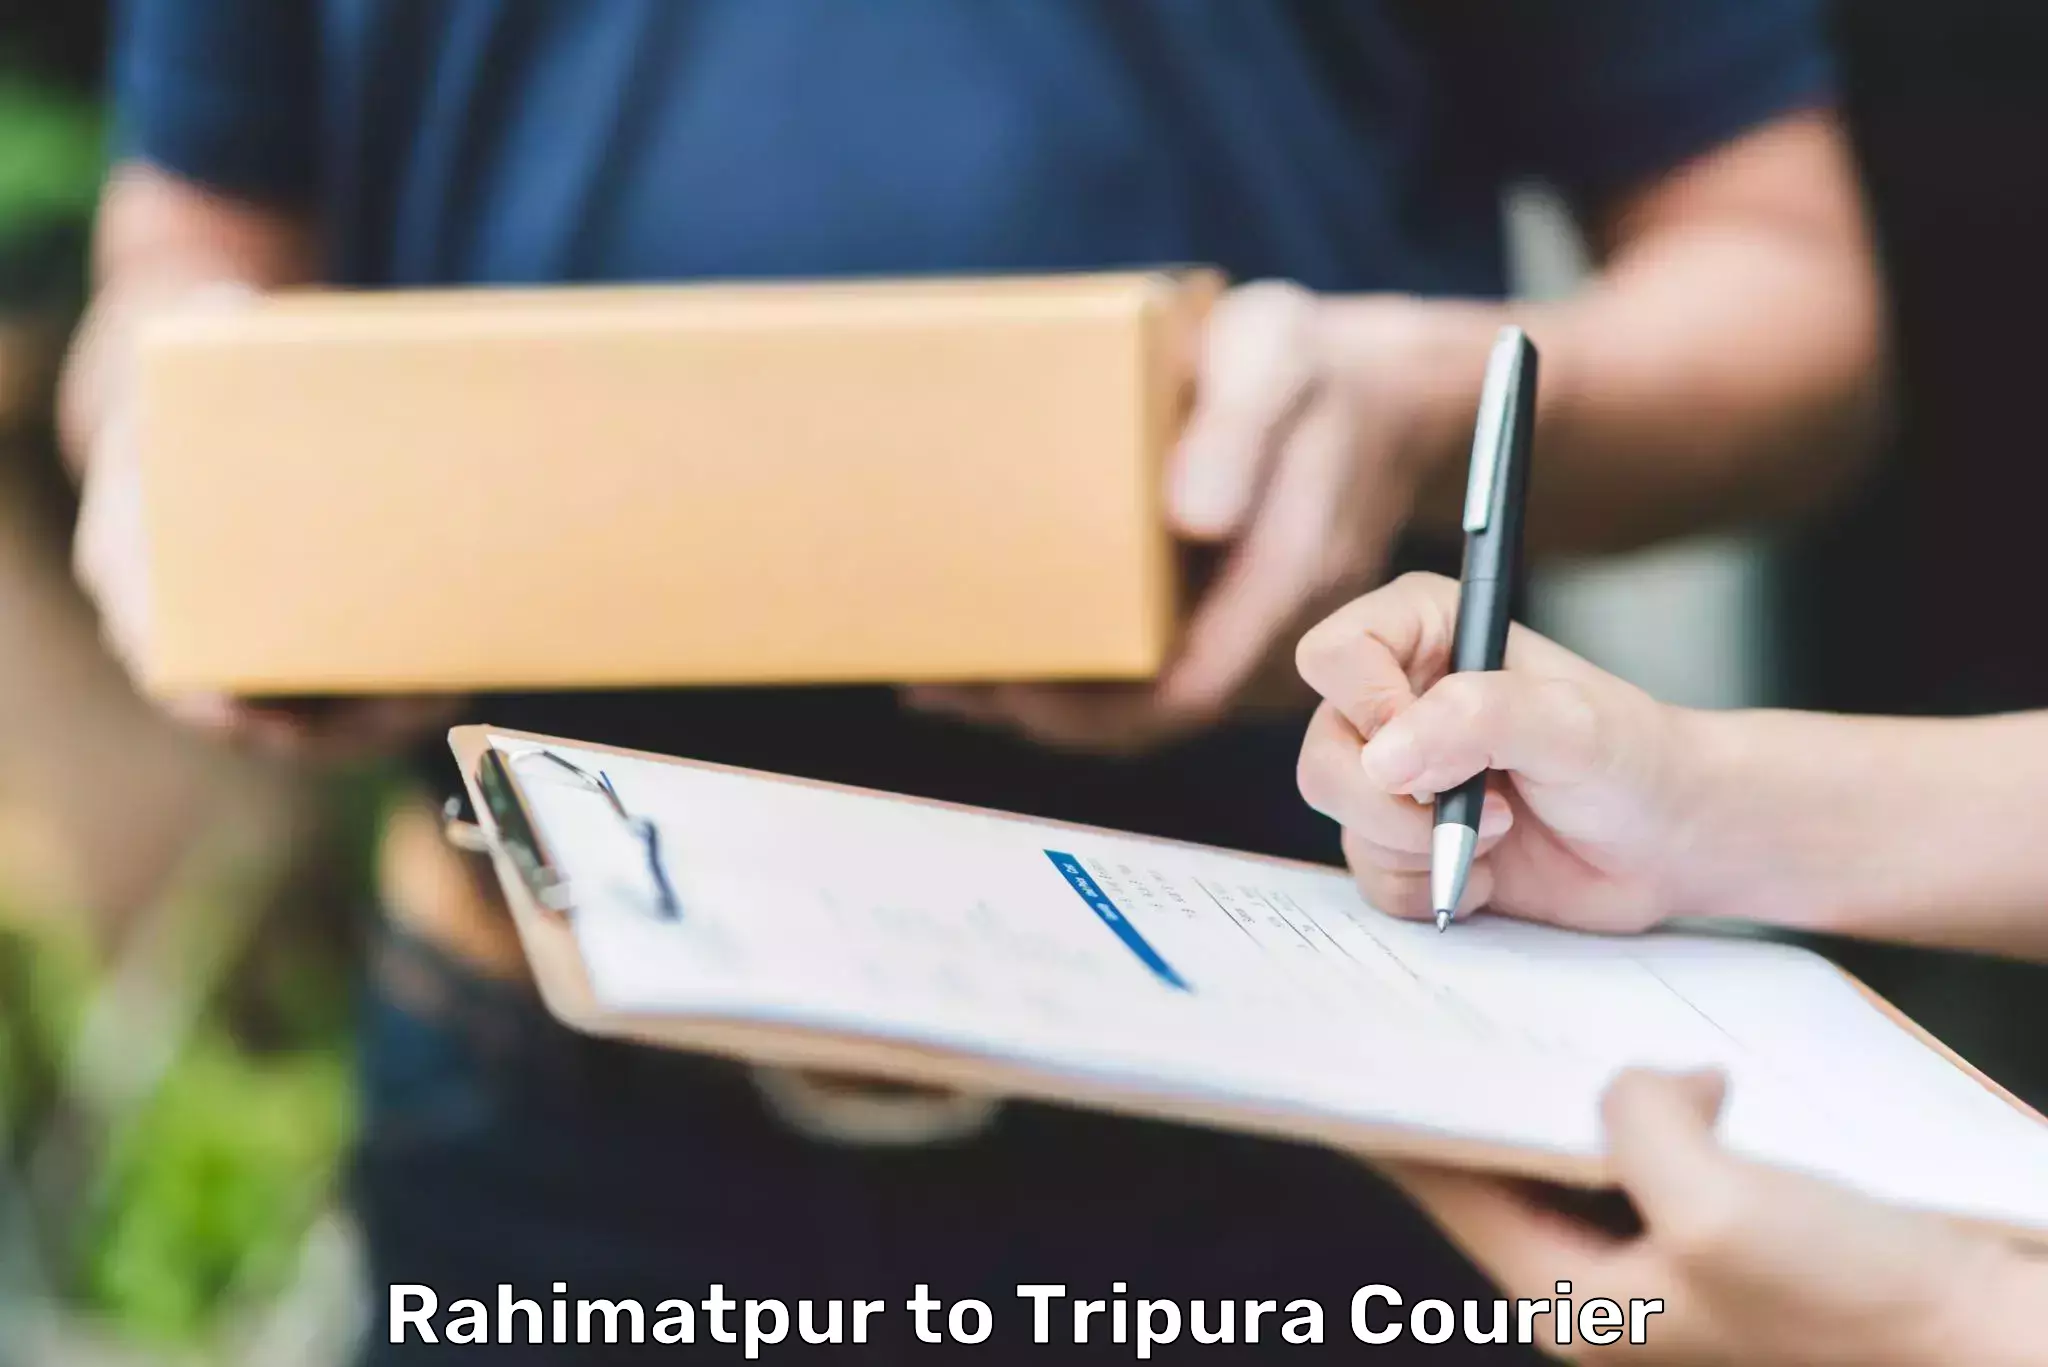 Smart shipping technology Rahimatpur to Agartala